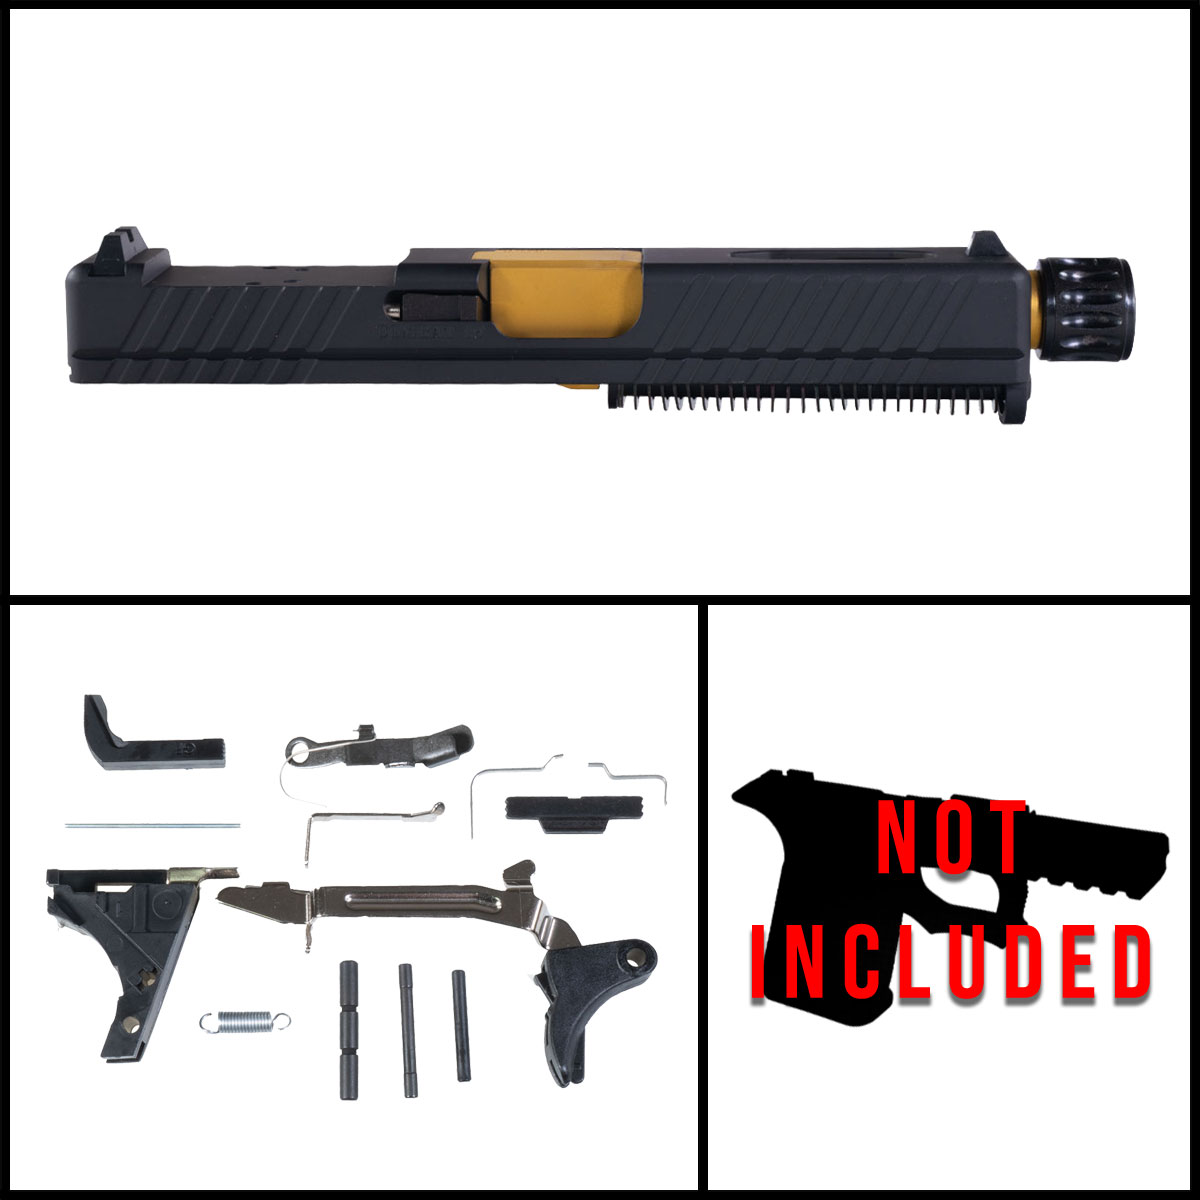 DTT 'Essor' 9mm Full Pistol Build Kit (Everything Minus Frame) - Glock 19 Gen 1-3 Compatible